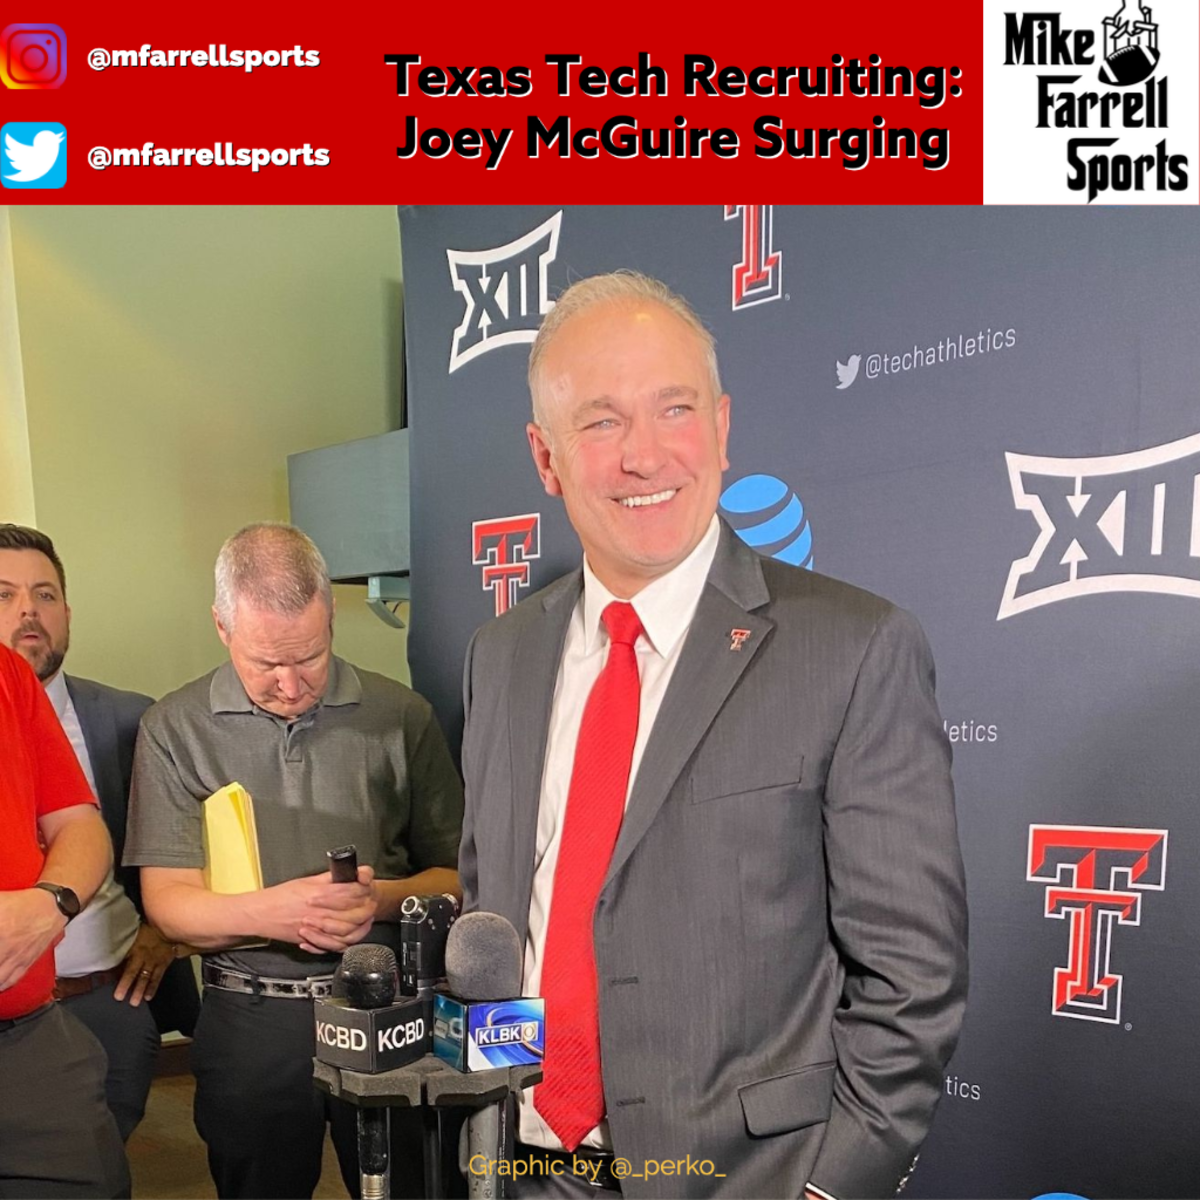 Texas Tech Recruiting